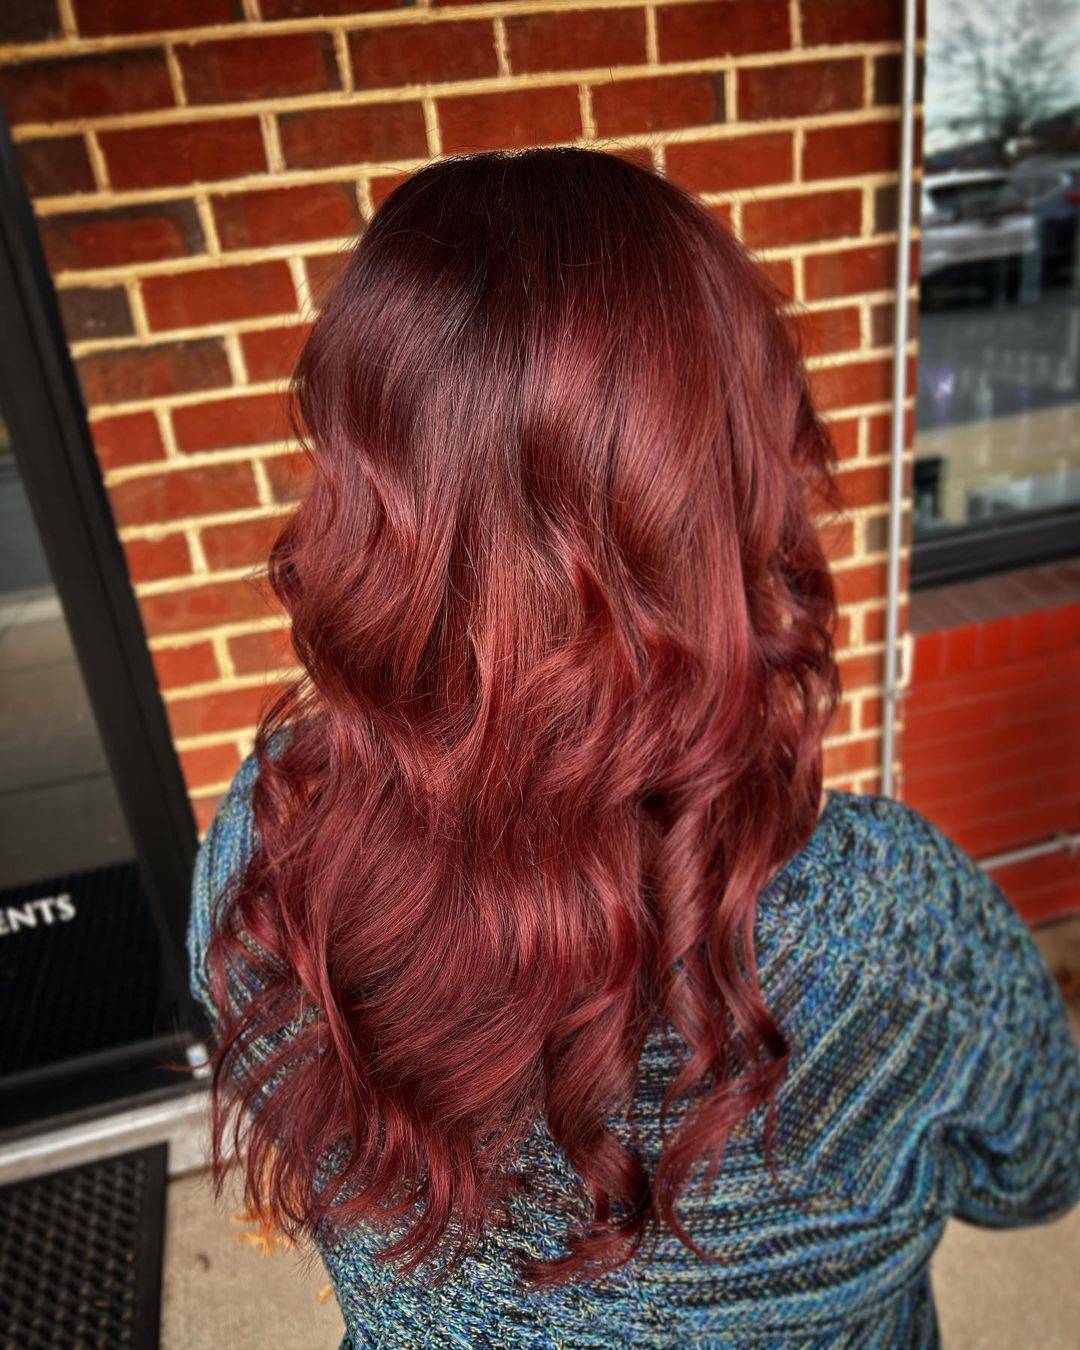 Burgundy hair color 446 burgundy hair color | burgundy hair color for women | burgundy hair color highlights Burgundy Hair Color